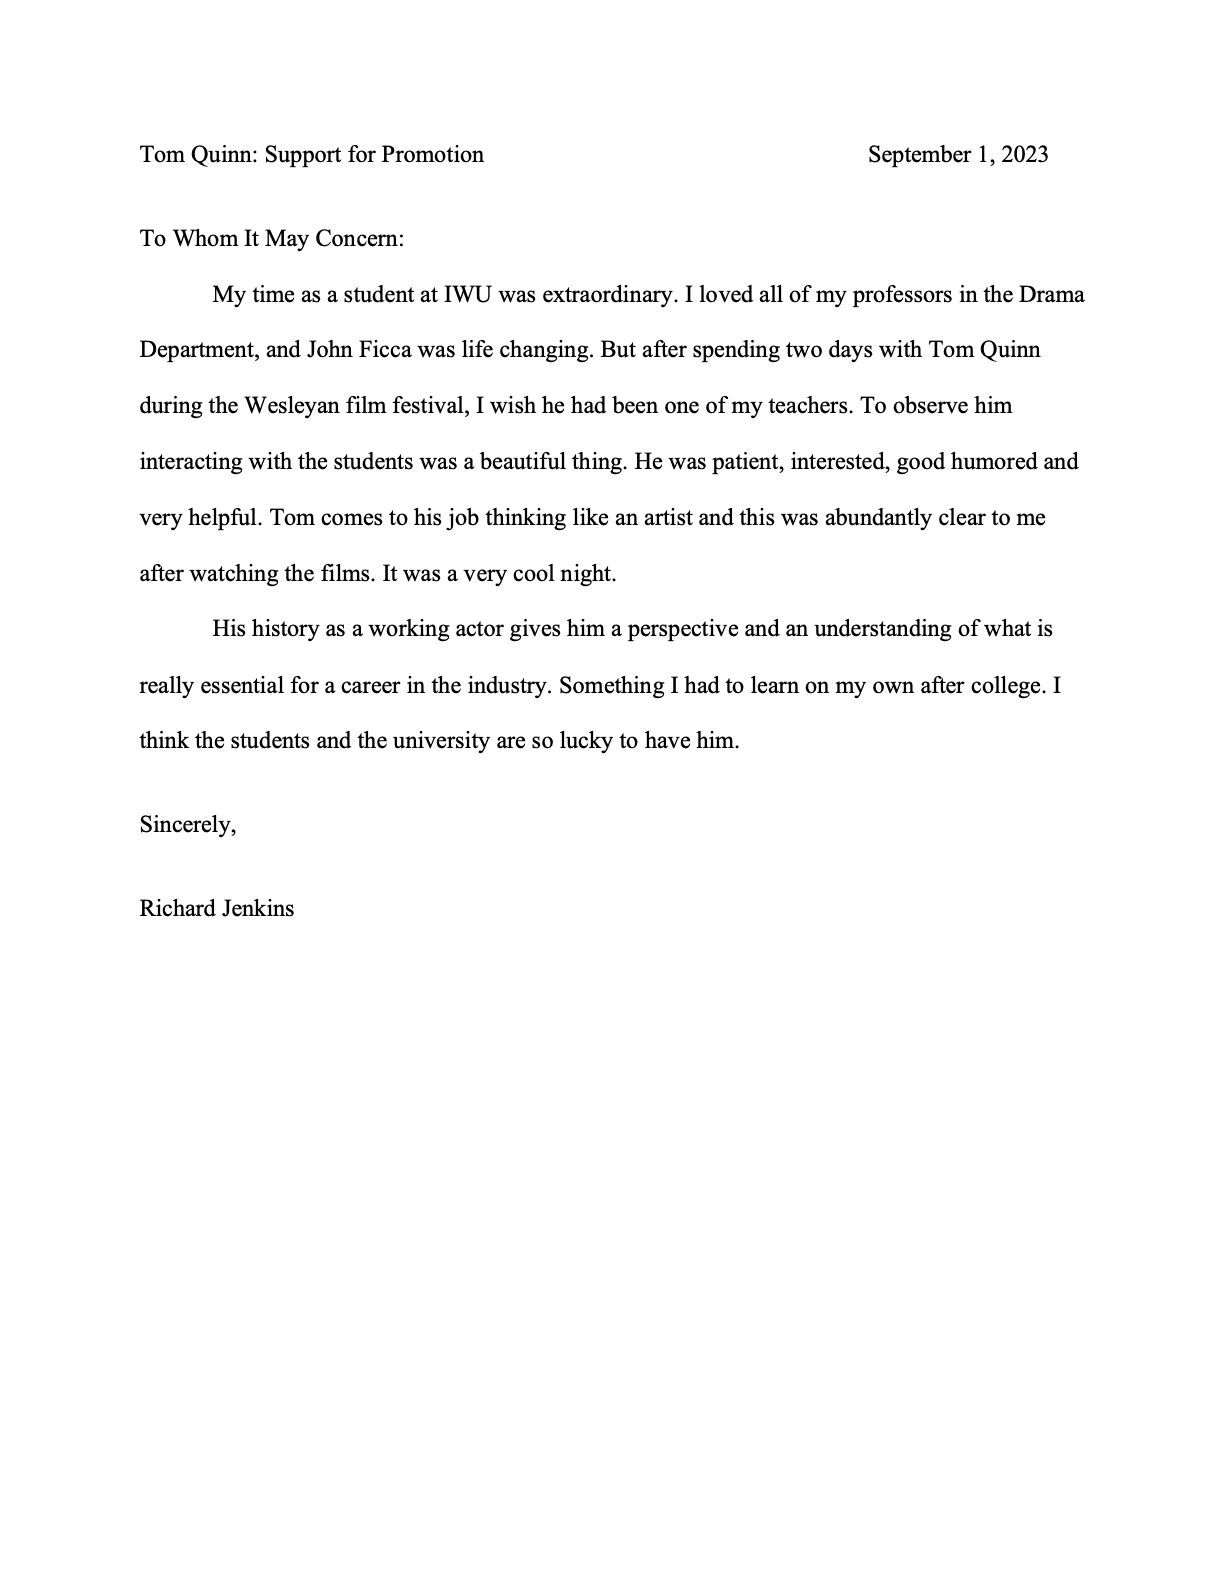 Richard Jenkins - Letter